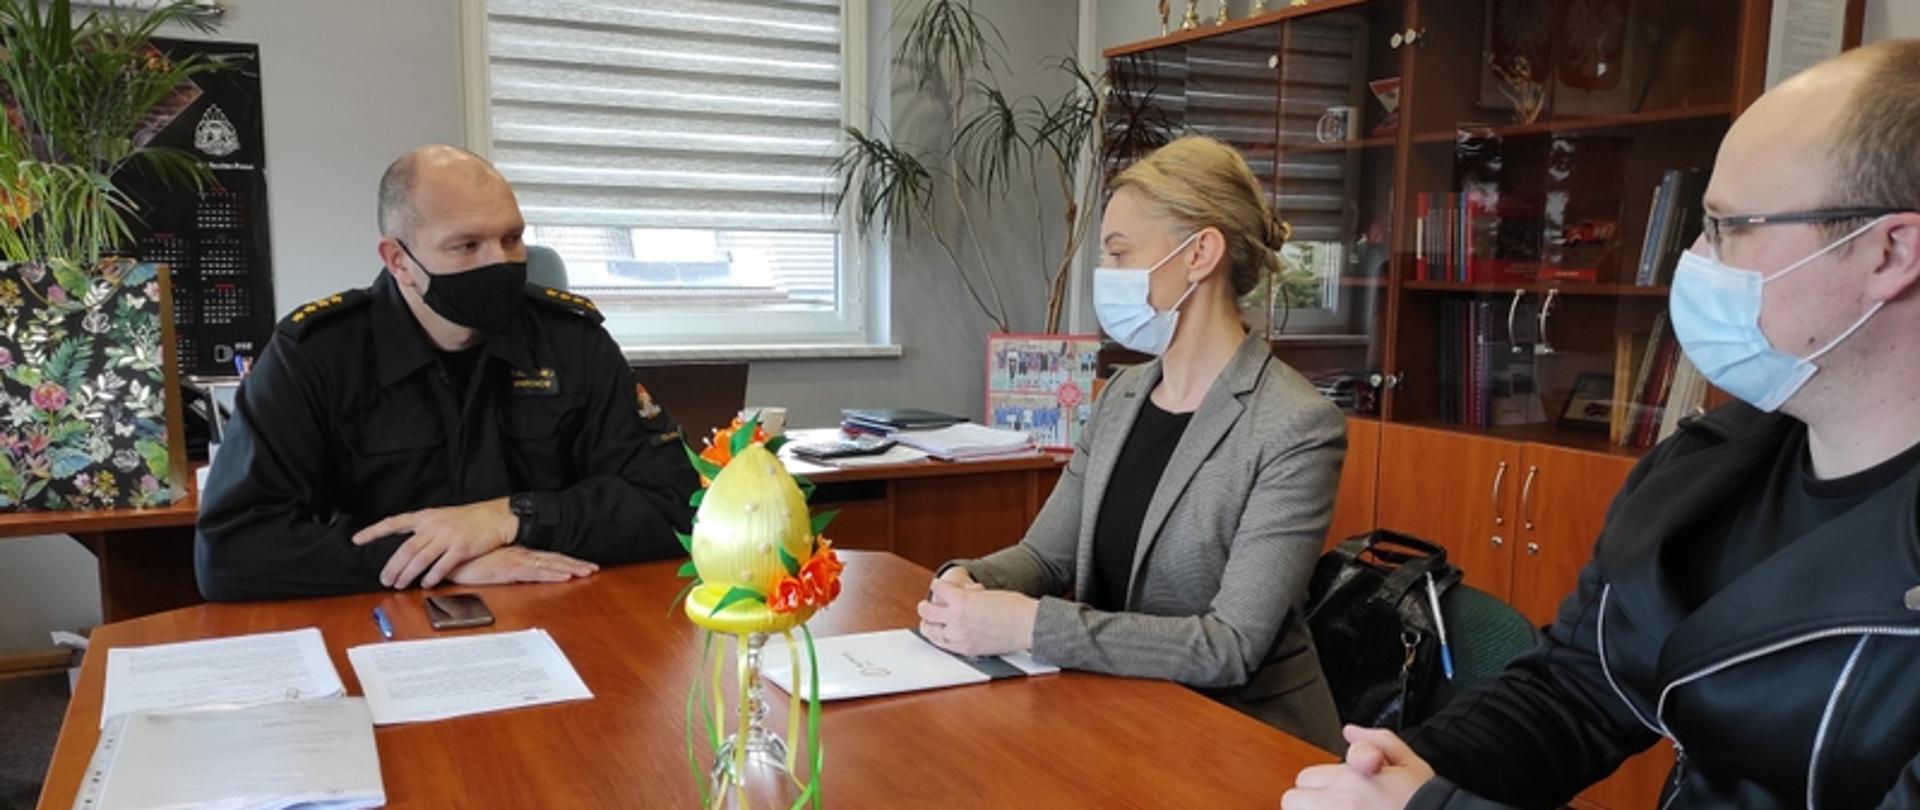 Na zdjęciu widać siedzących od lewej" komendanta powiatowego PSP w Oławie, Annę Imielską i Radosława Łączkowiaka z kliniki Harmony Clinic, podczas rozmowy.